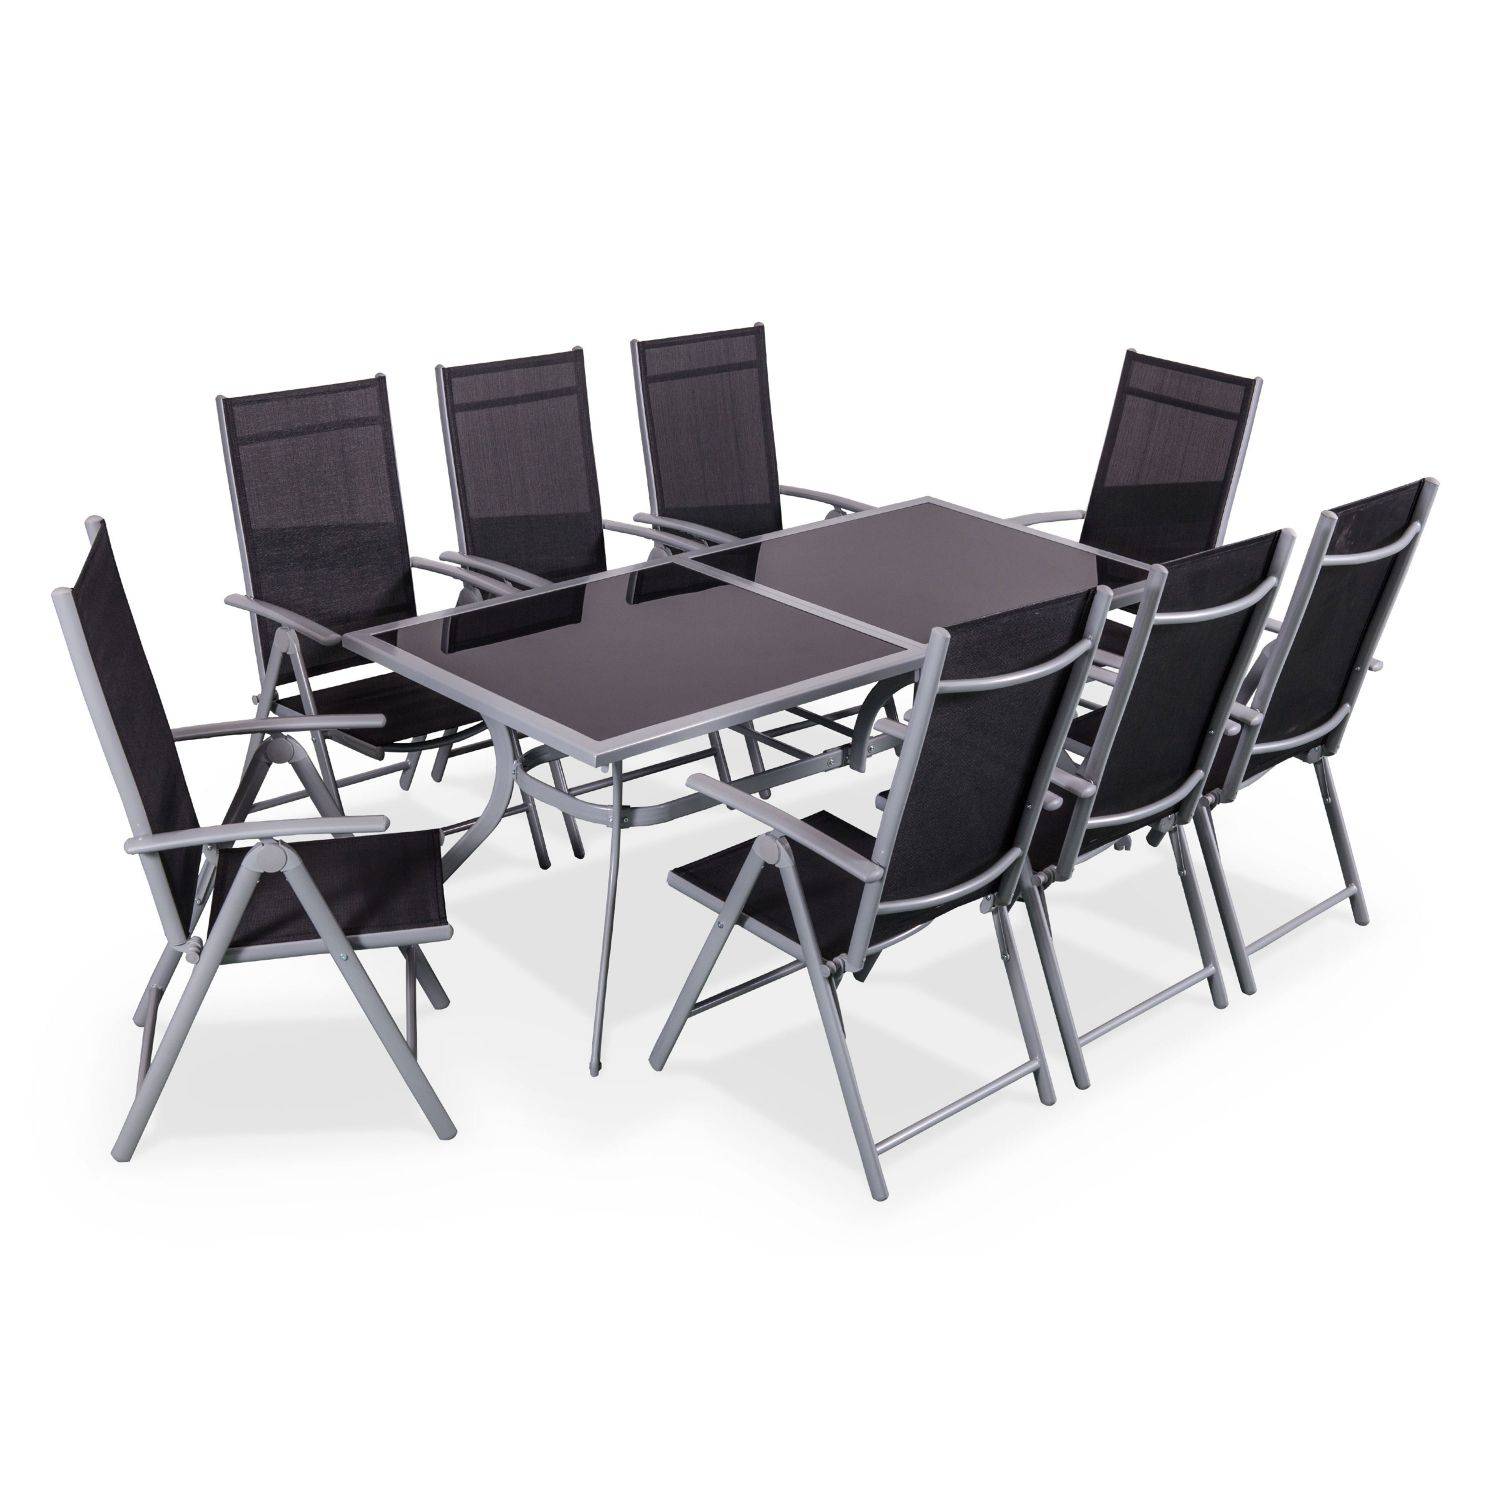 Gartengarnitur aus Aluminium und Textilene - Naevia - Grau, Schwarz - 1 großer rechteckiger Tisch, 8 Klappstühle Photo1